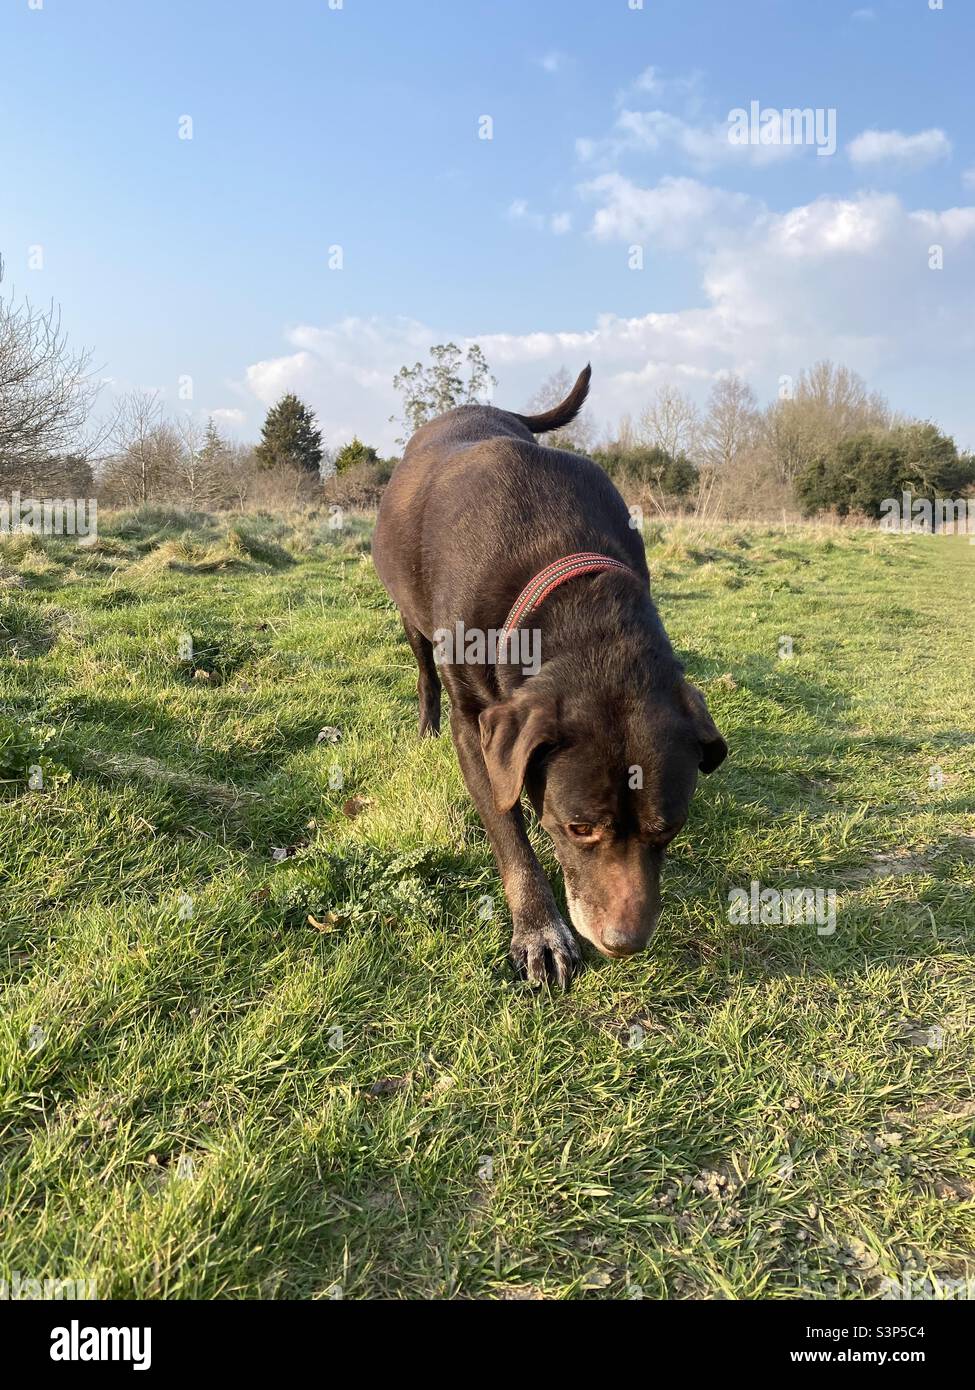 Brown Labrador dog searching through grass Stock Photo